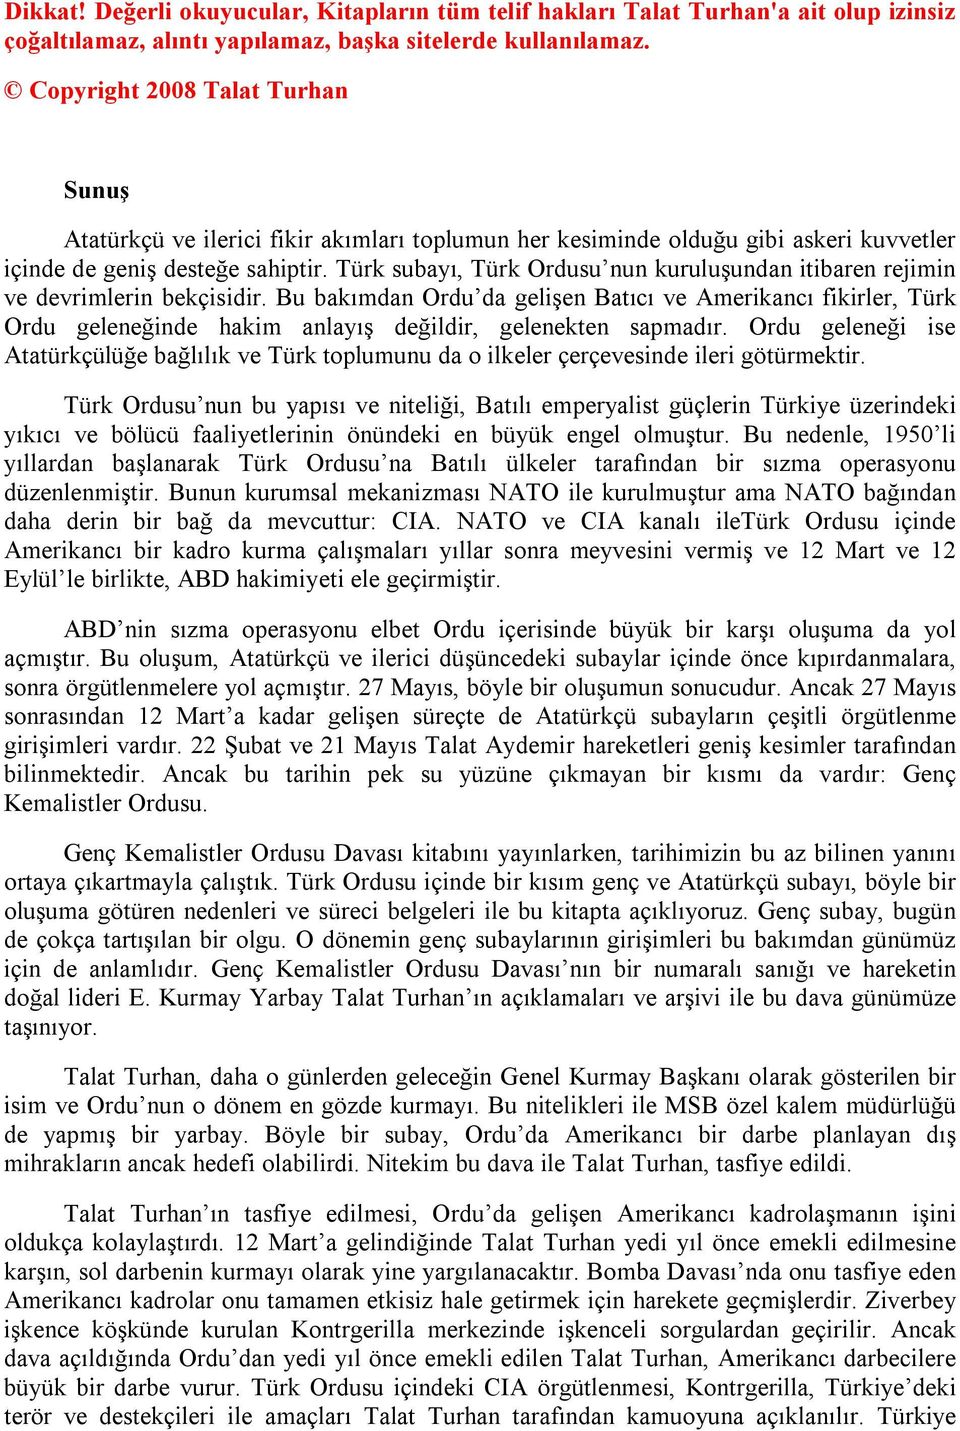 Türk subayı, Türk Ordusu nun kuruluşundan itibaren rejimin ve devrimlerin bekçisidir.